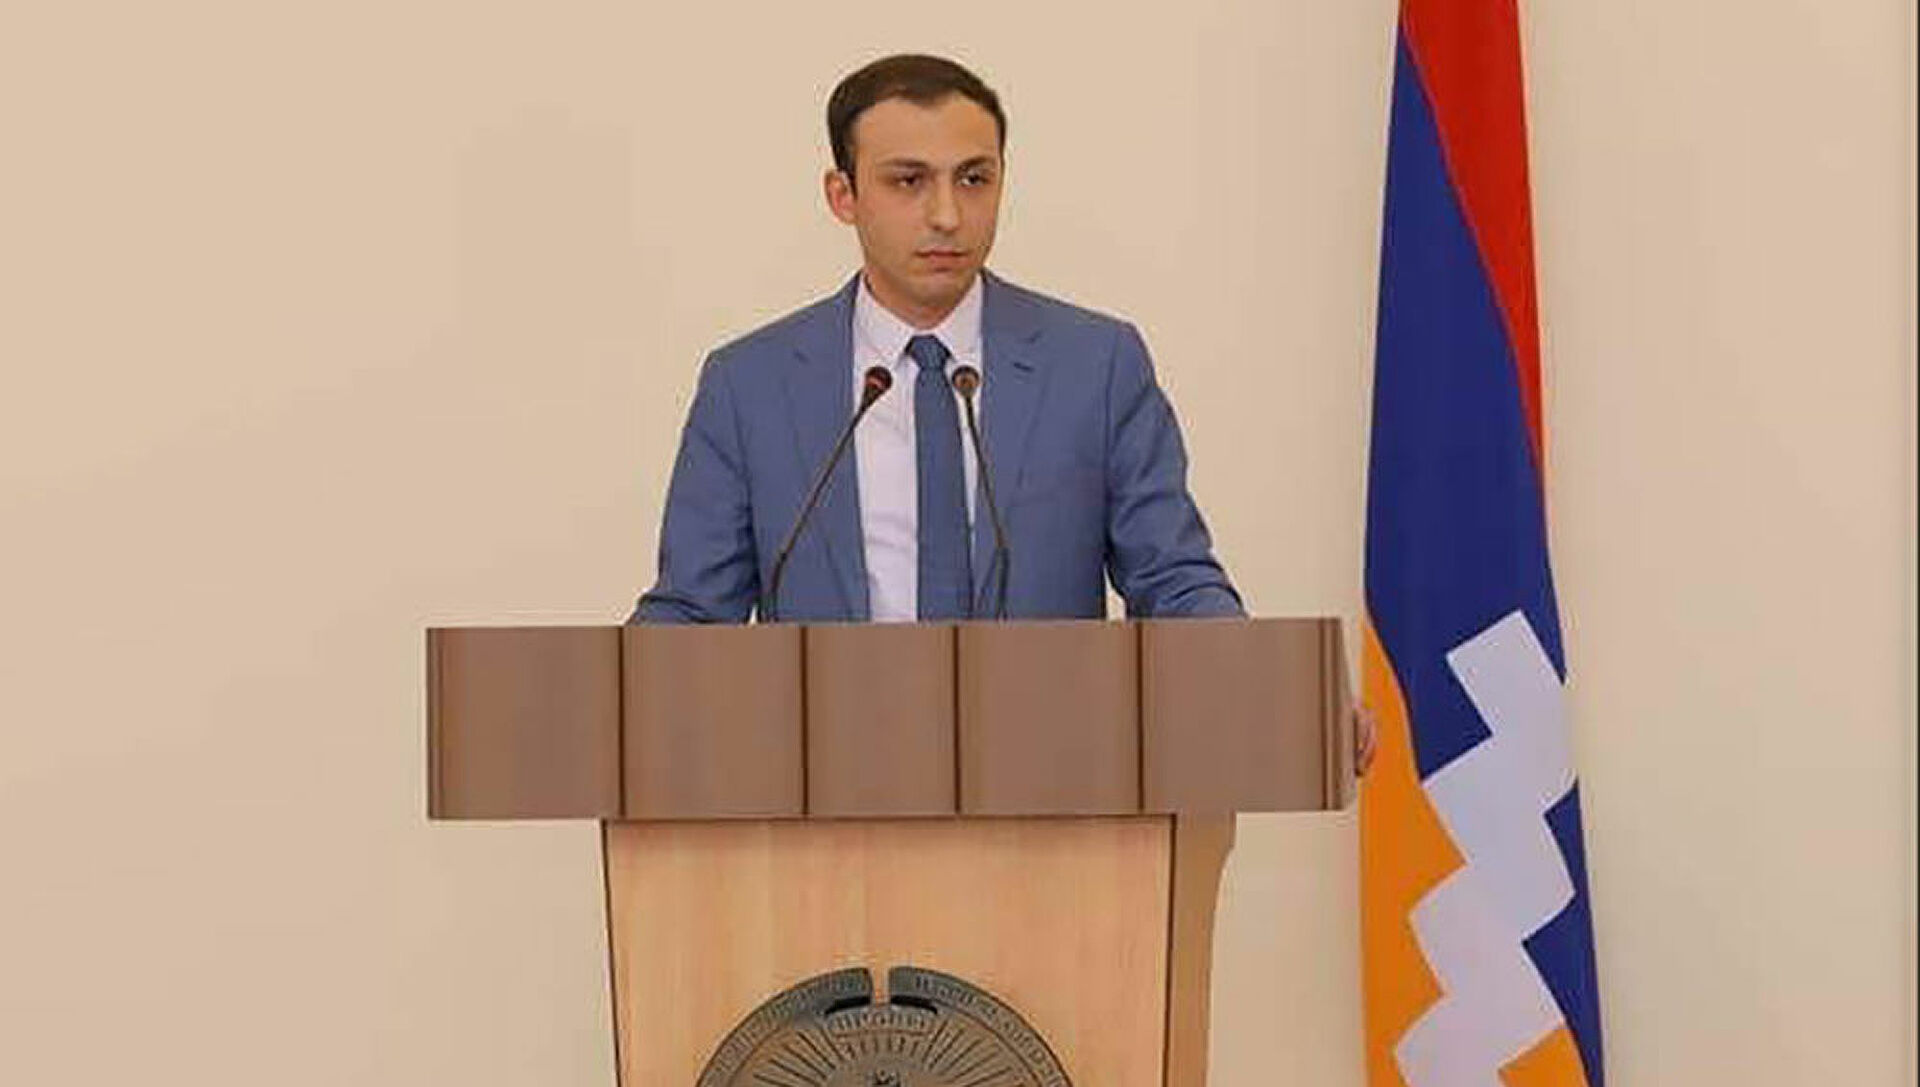 Азербайджан ведет борьбу против армянских культурных ценностей в Арцахе - ЗПЧ